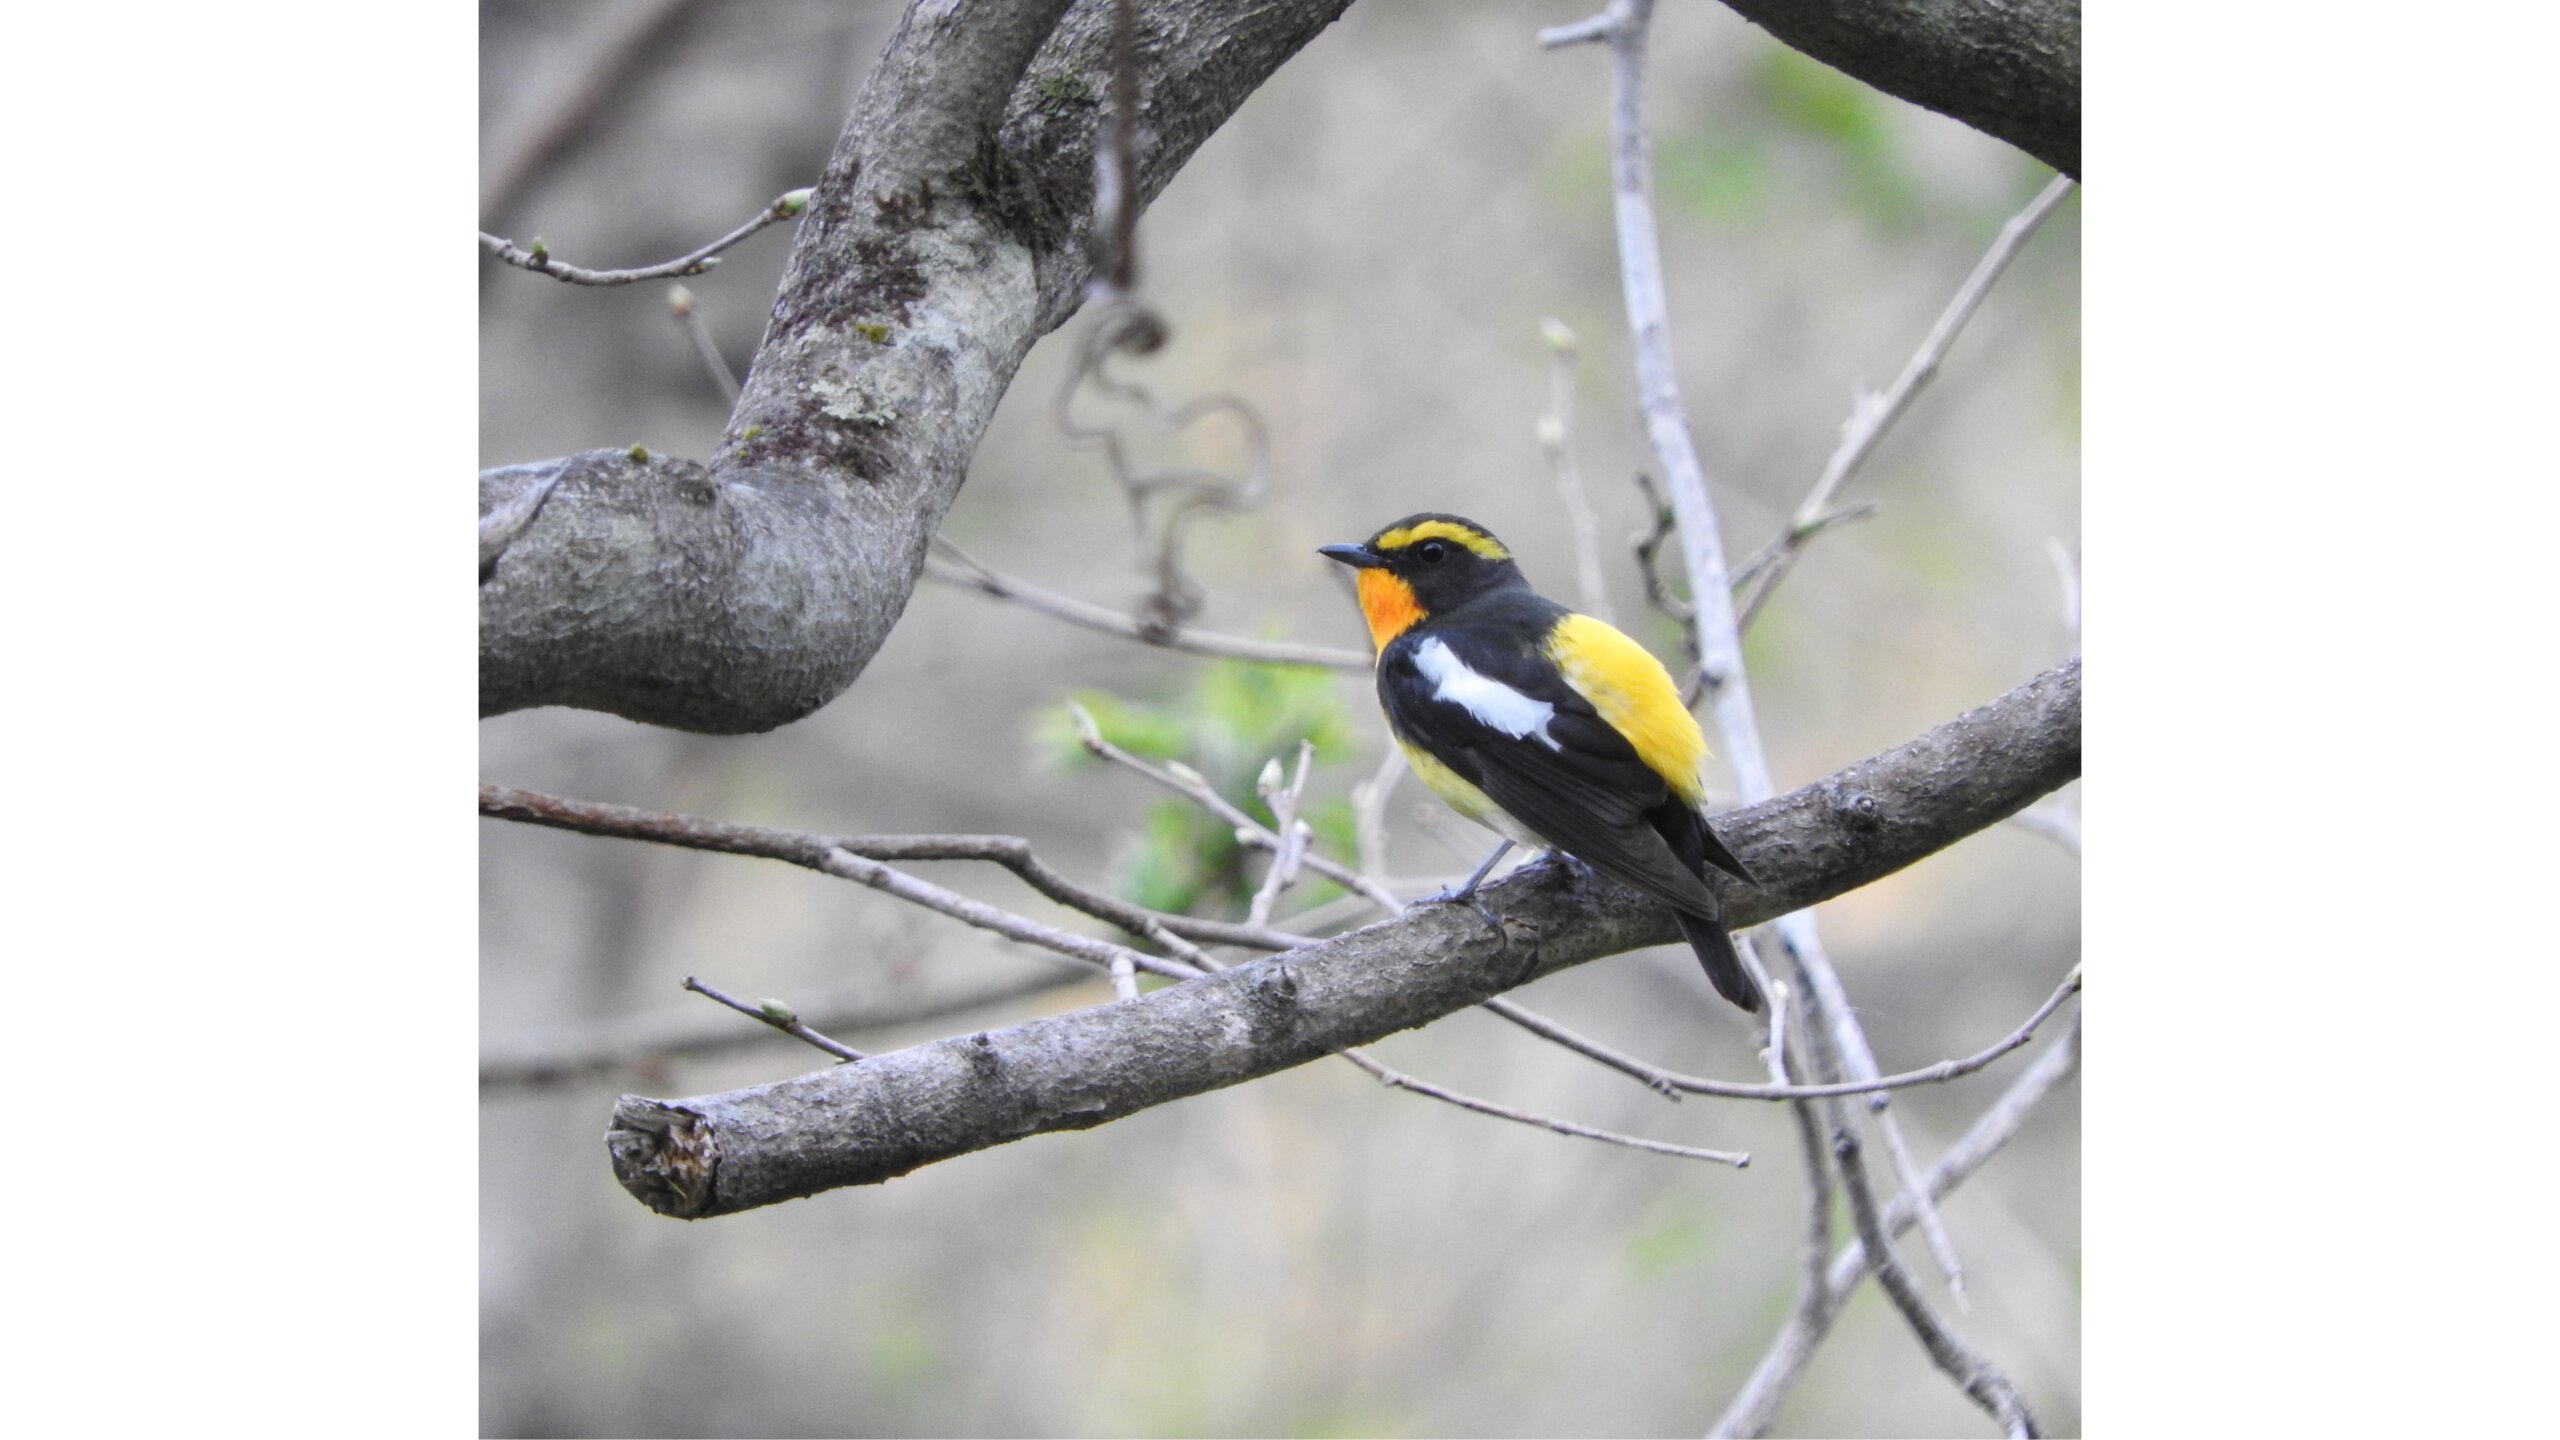 在候鳥較多的春季與秋季之外，仍然有許多迷人的鳥類會聚集在道東地區。夏季時可以欣賞到黃眉黃鶲、白腹琉璃、野鴝與長尾雀等鳥類。照片為黃眉黃鶲。©︎Mark Brazil